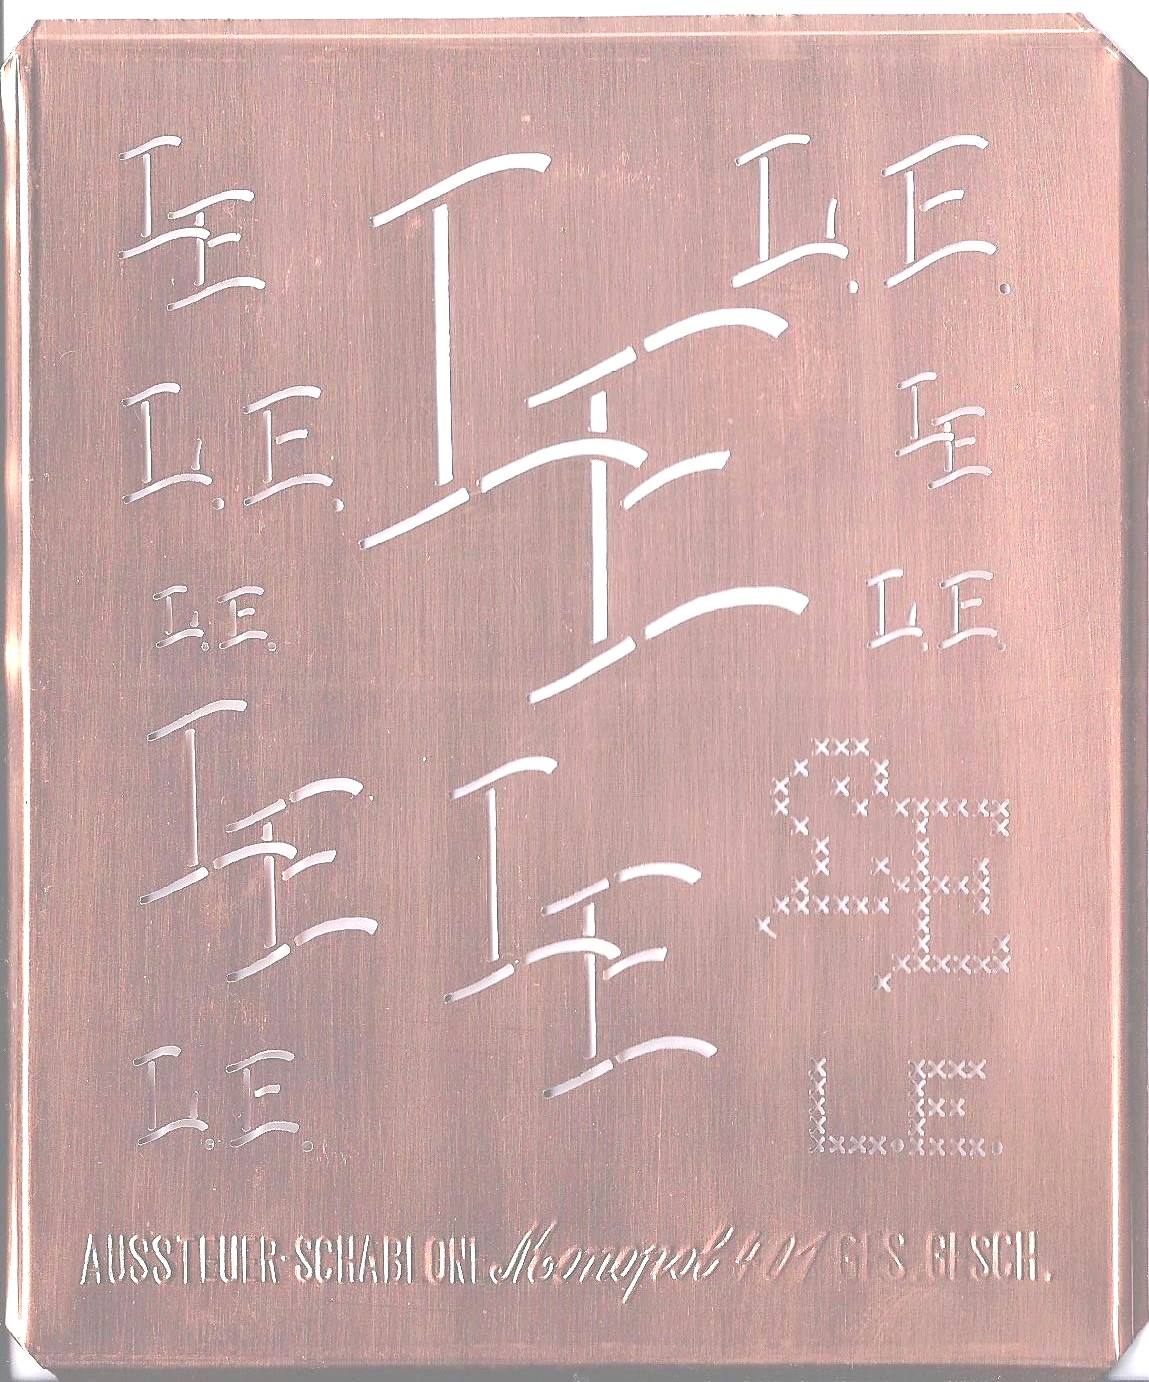 LE - 12 Monogrammvariationen: Kupferschablone. Monopol 401.